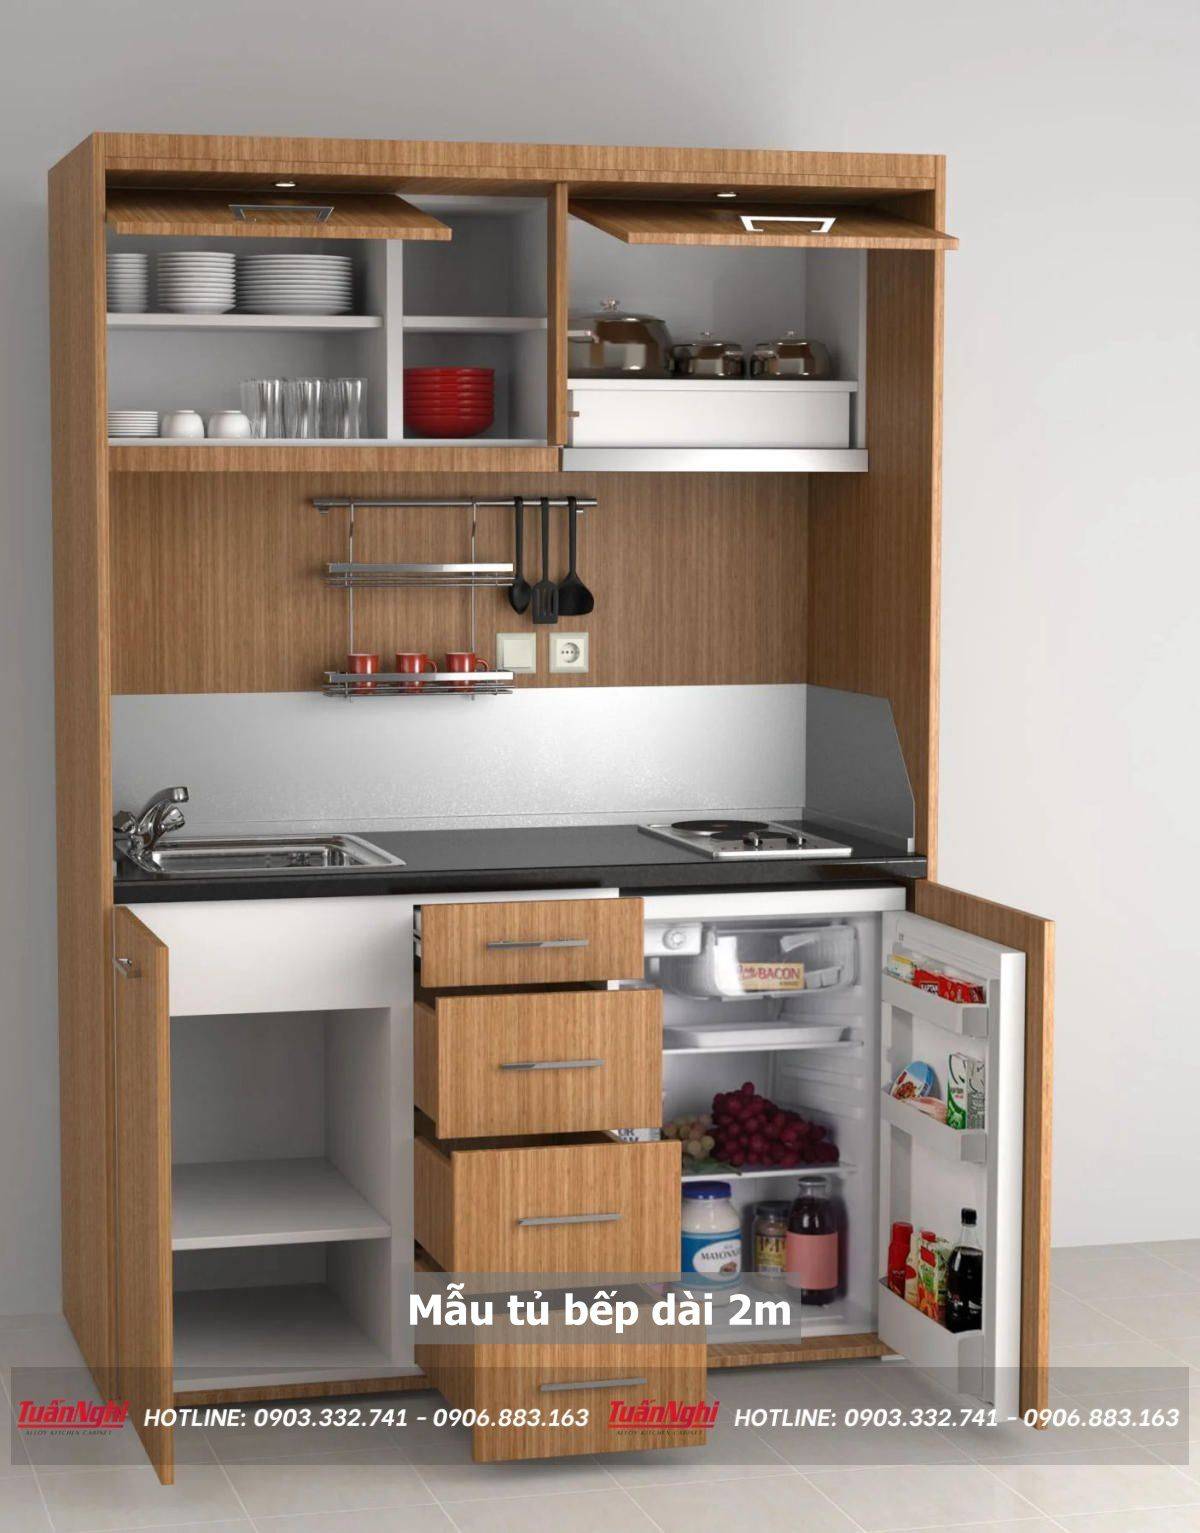 Mẹo thiết kế mẫu tủ bếp dài 2m hợp lý cho mọi không gian